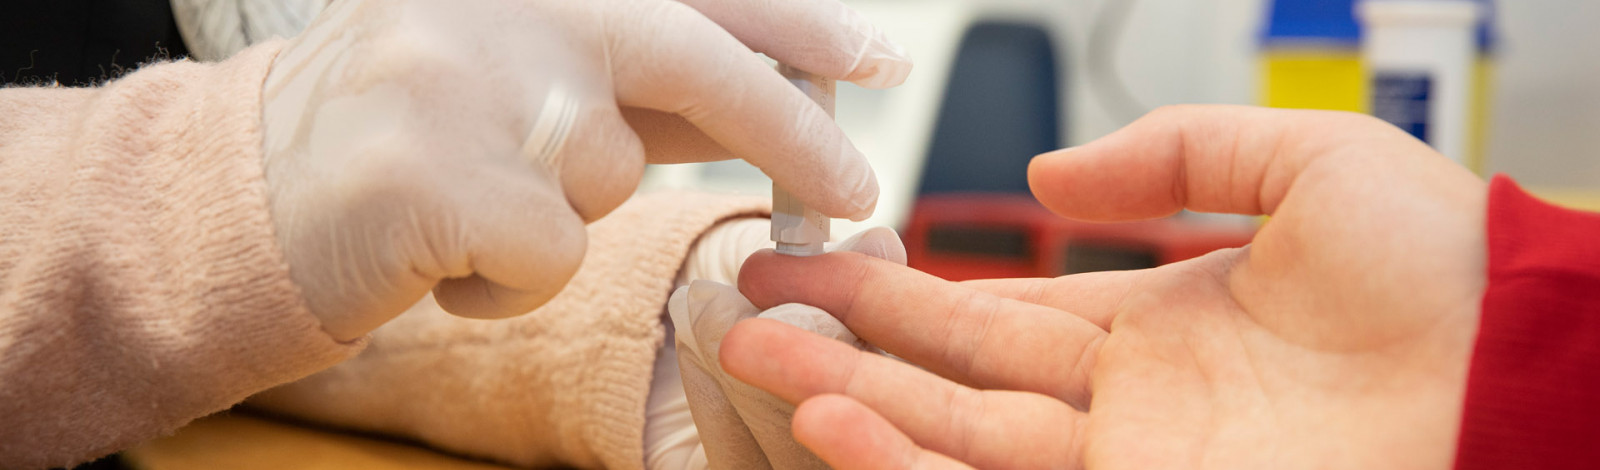 Assistente van huisarts prikt vinger voor bloedsuikerwaarde